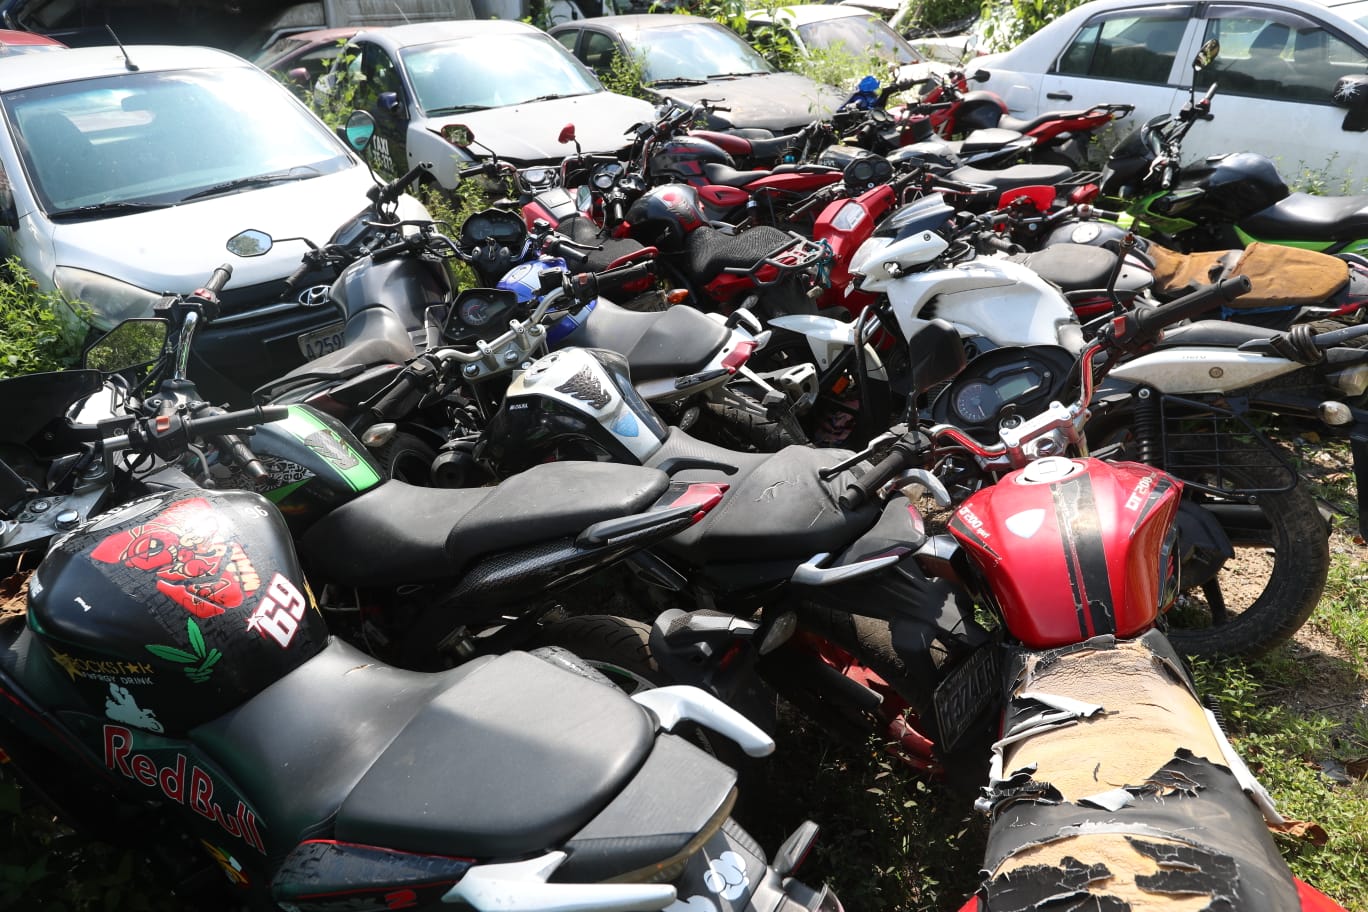 Muchas de las motos consignadas por la PNC no son reclamadas. (Foto Prensa Libre: María José Bonilla)